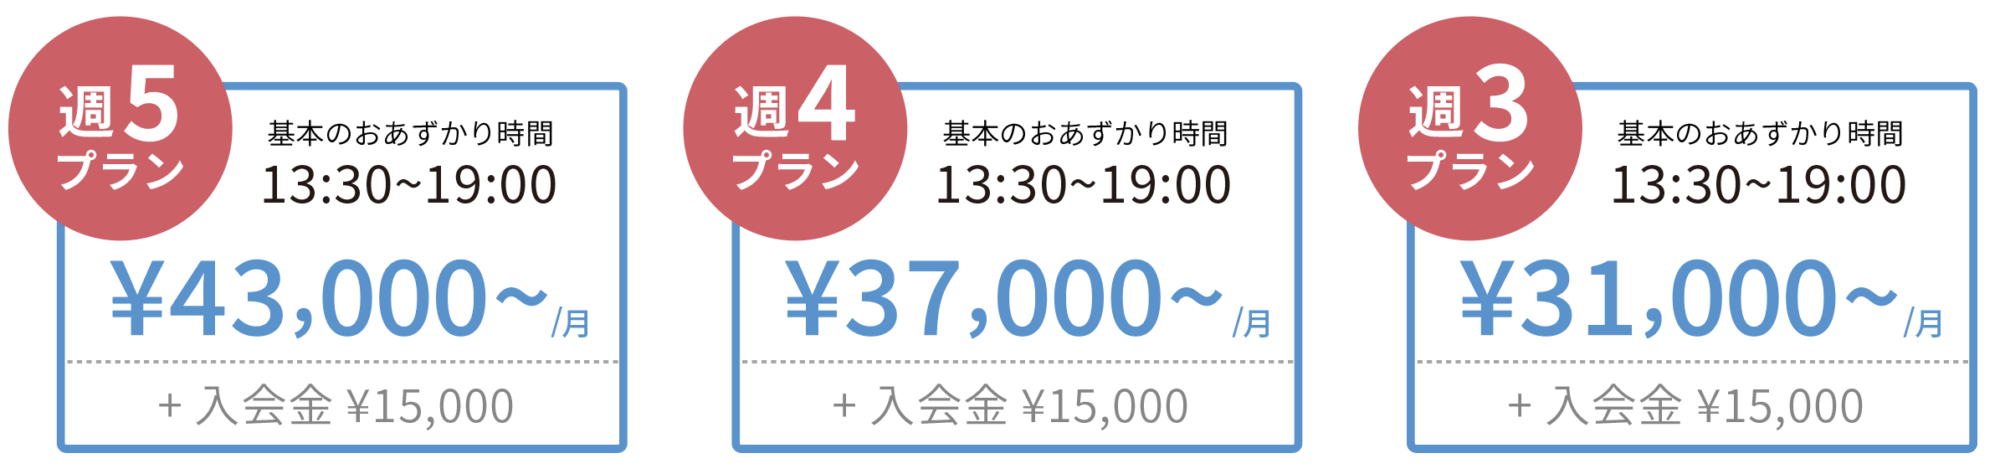 鎌倉の民間学童費用